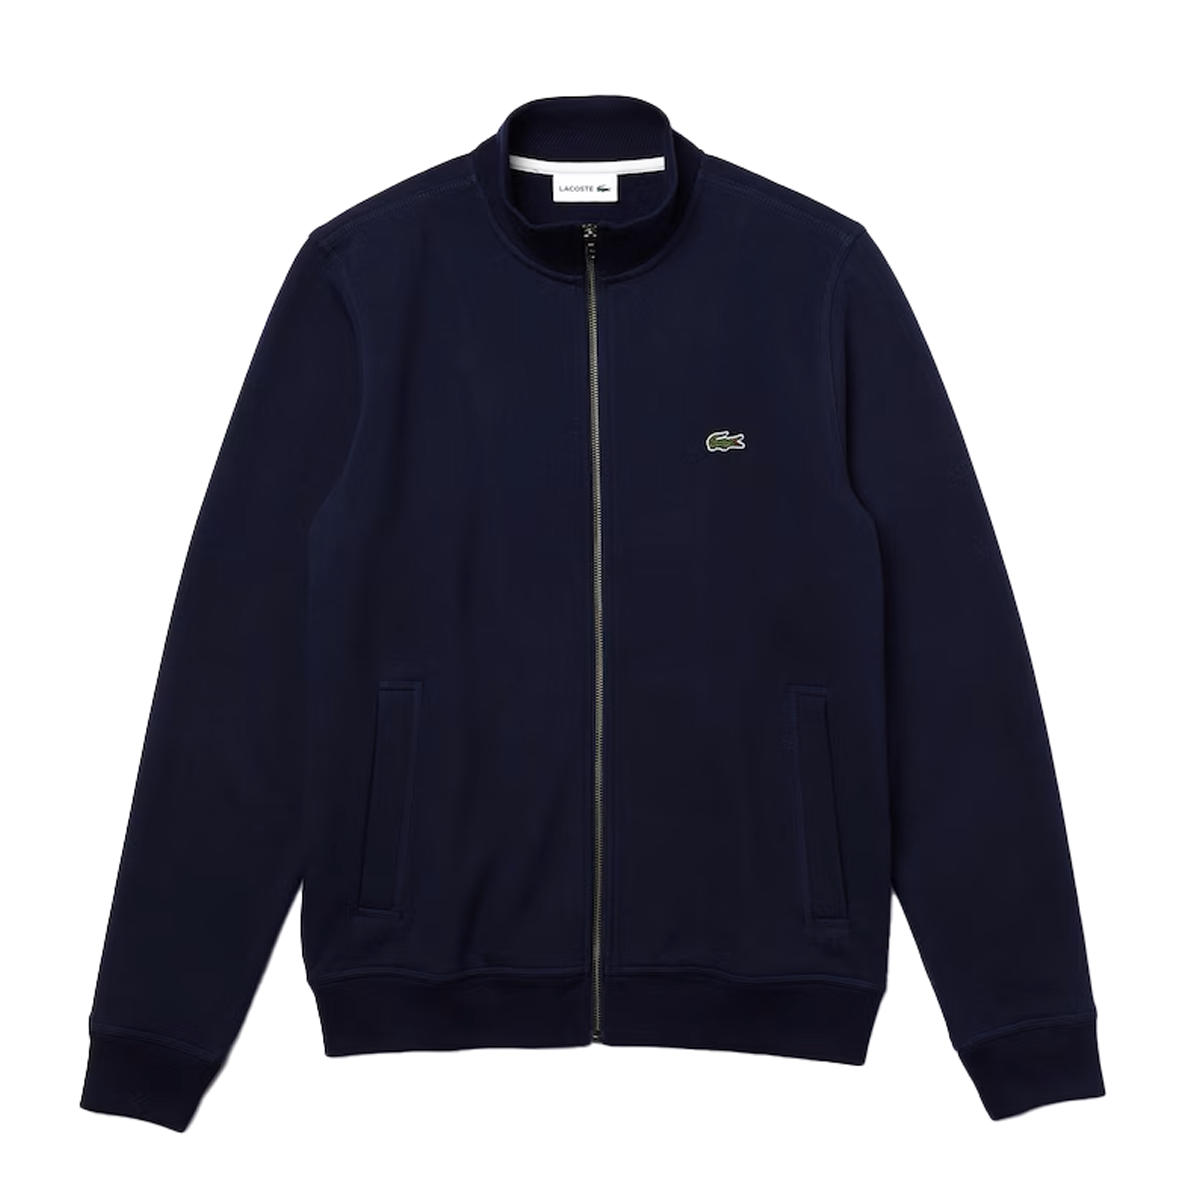 Lacoste Men's Zip-Up Piqué Fleece Jacket in Navy Blue SH2178-51 166